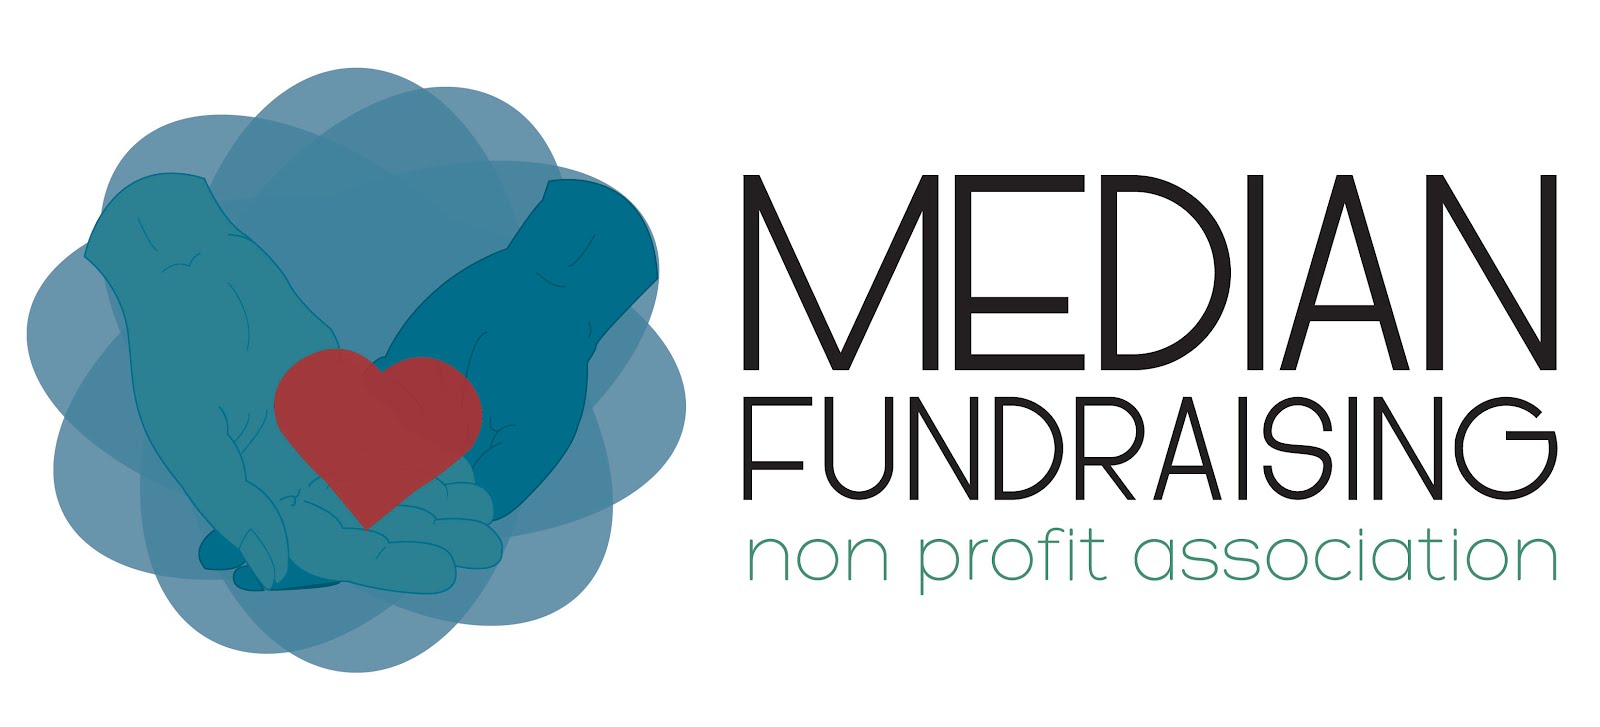 Median Fundraising Non-Profit Association